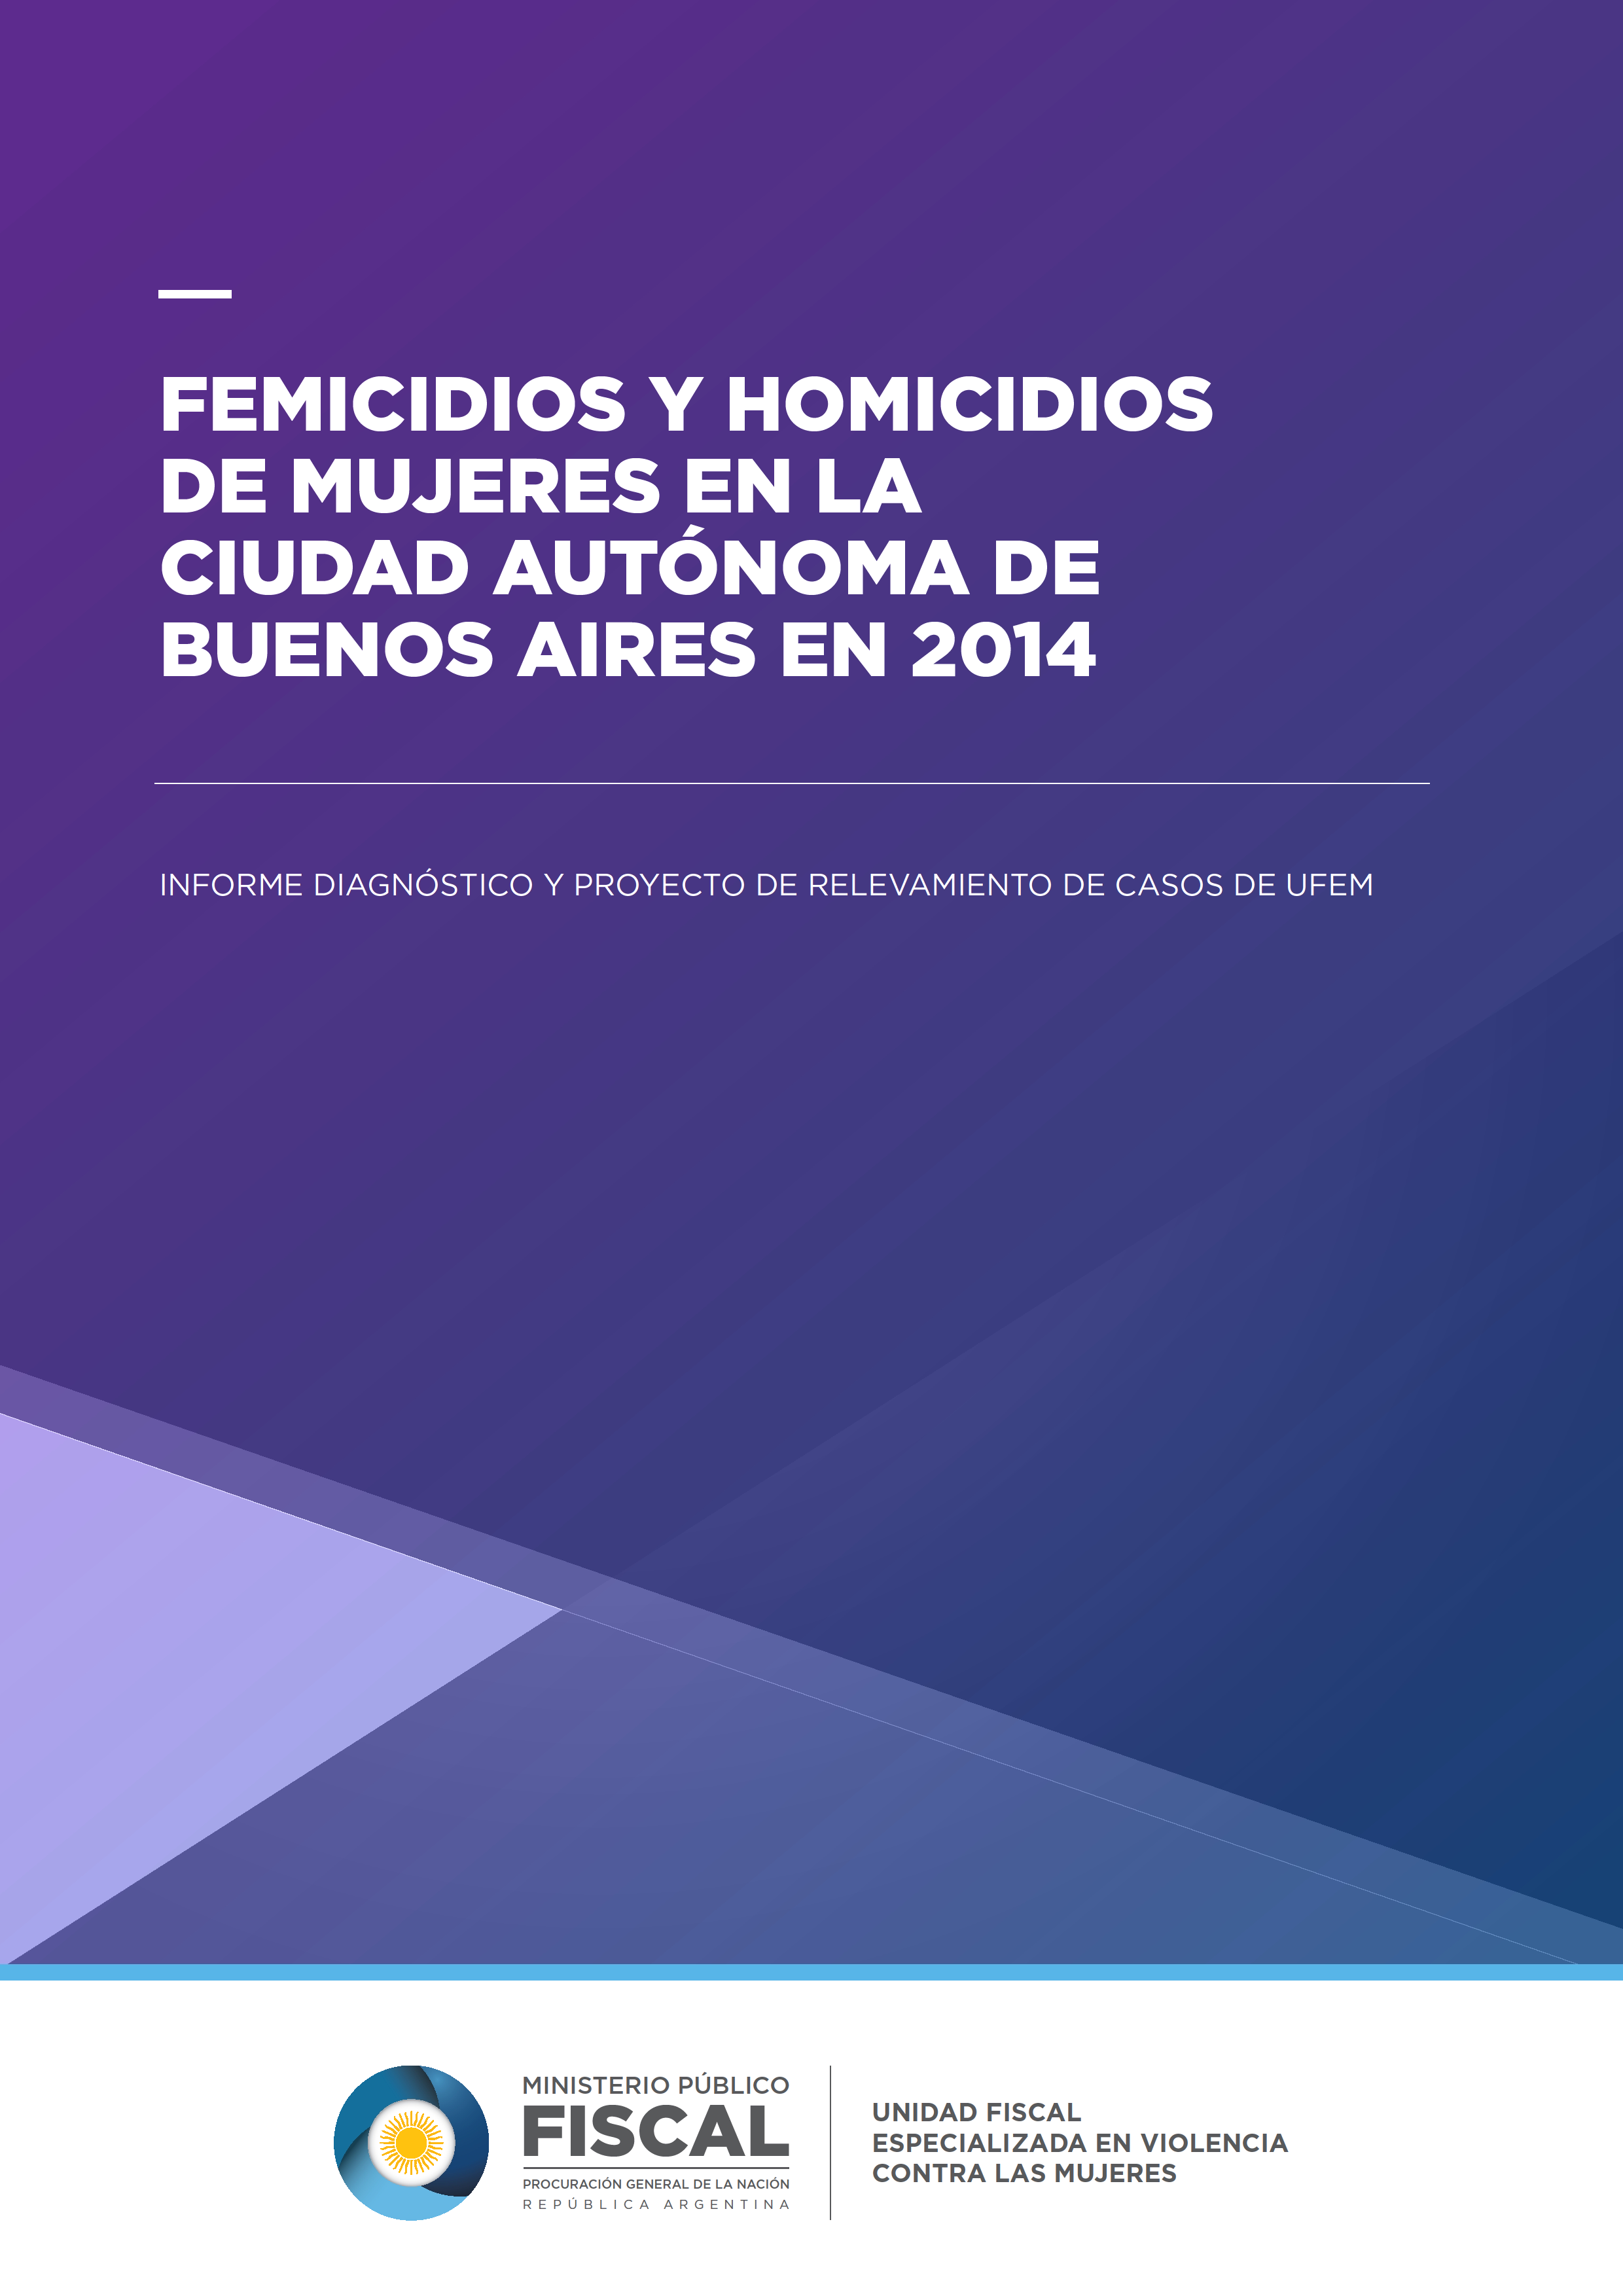 Femicidios y Homicidios dolosos de mujeres en la Ciudad Autónoma de Buenos Aires 2014